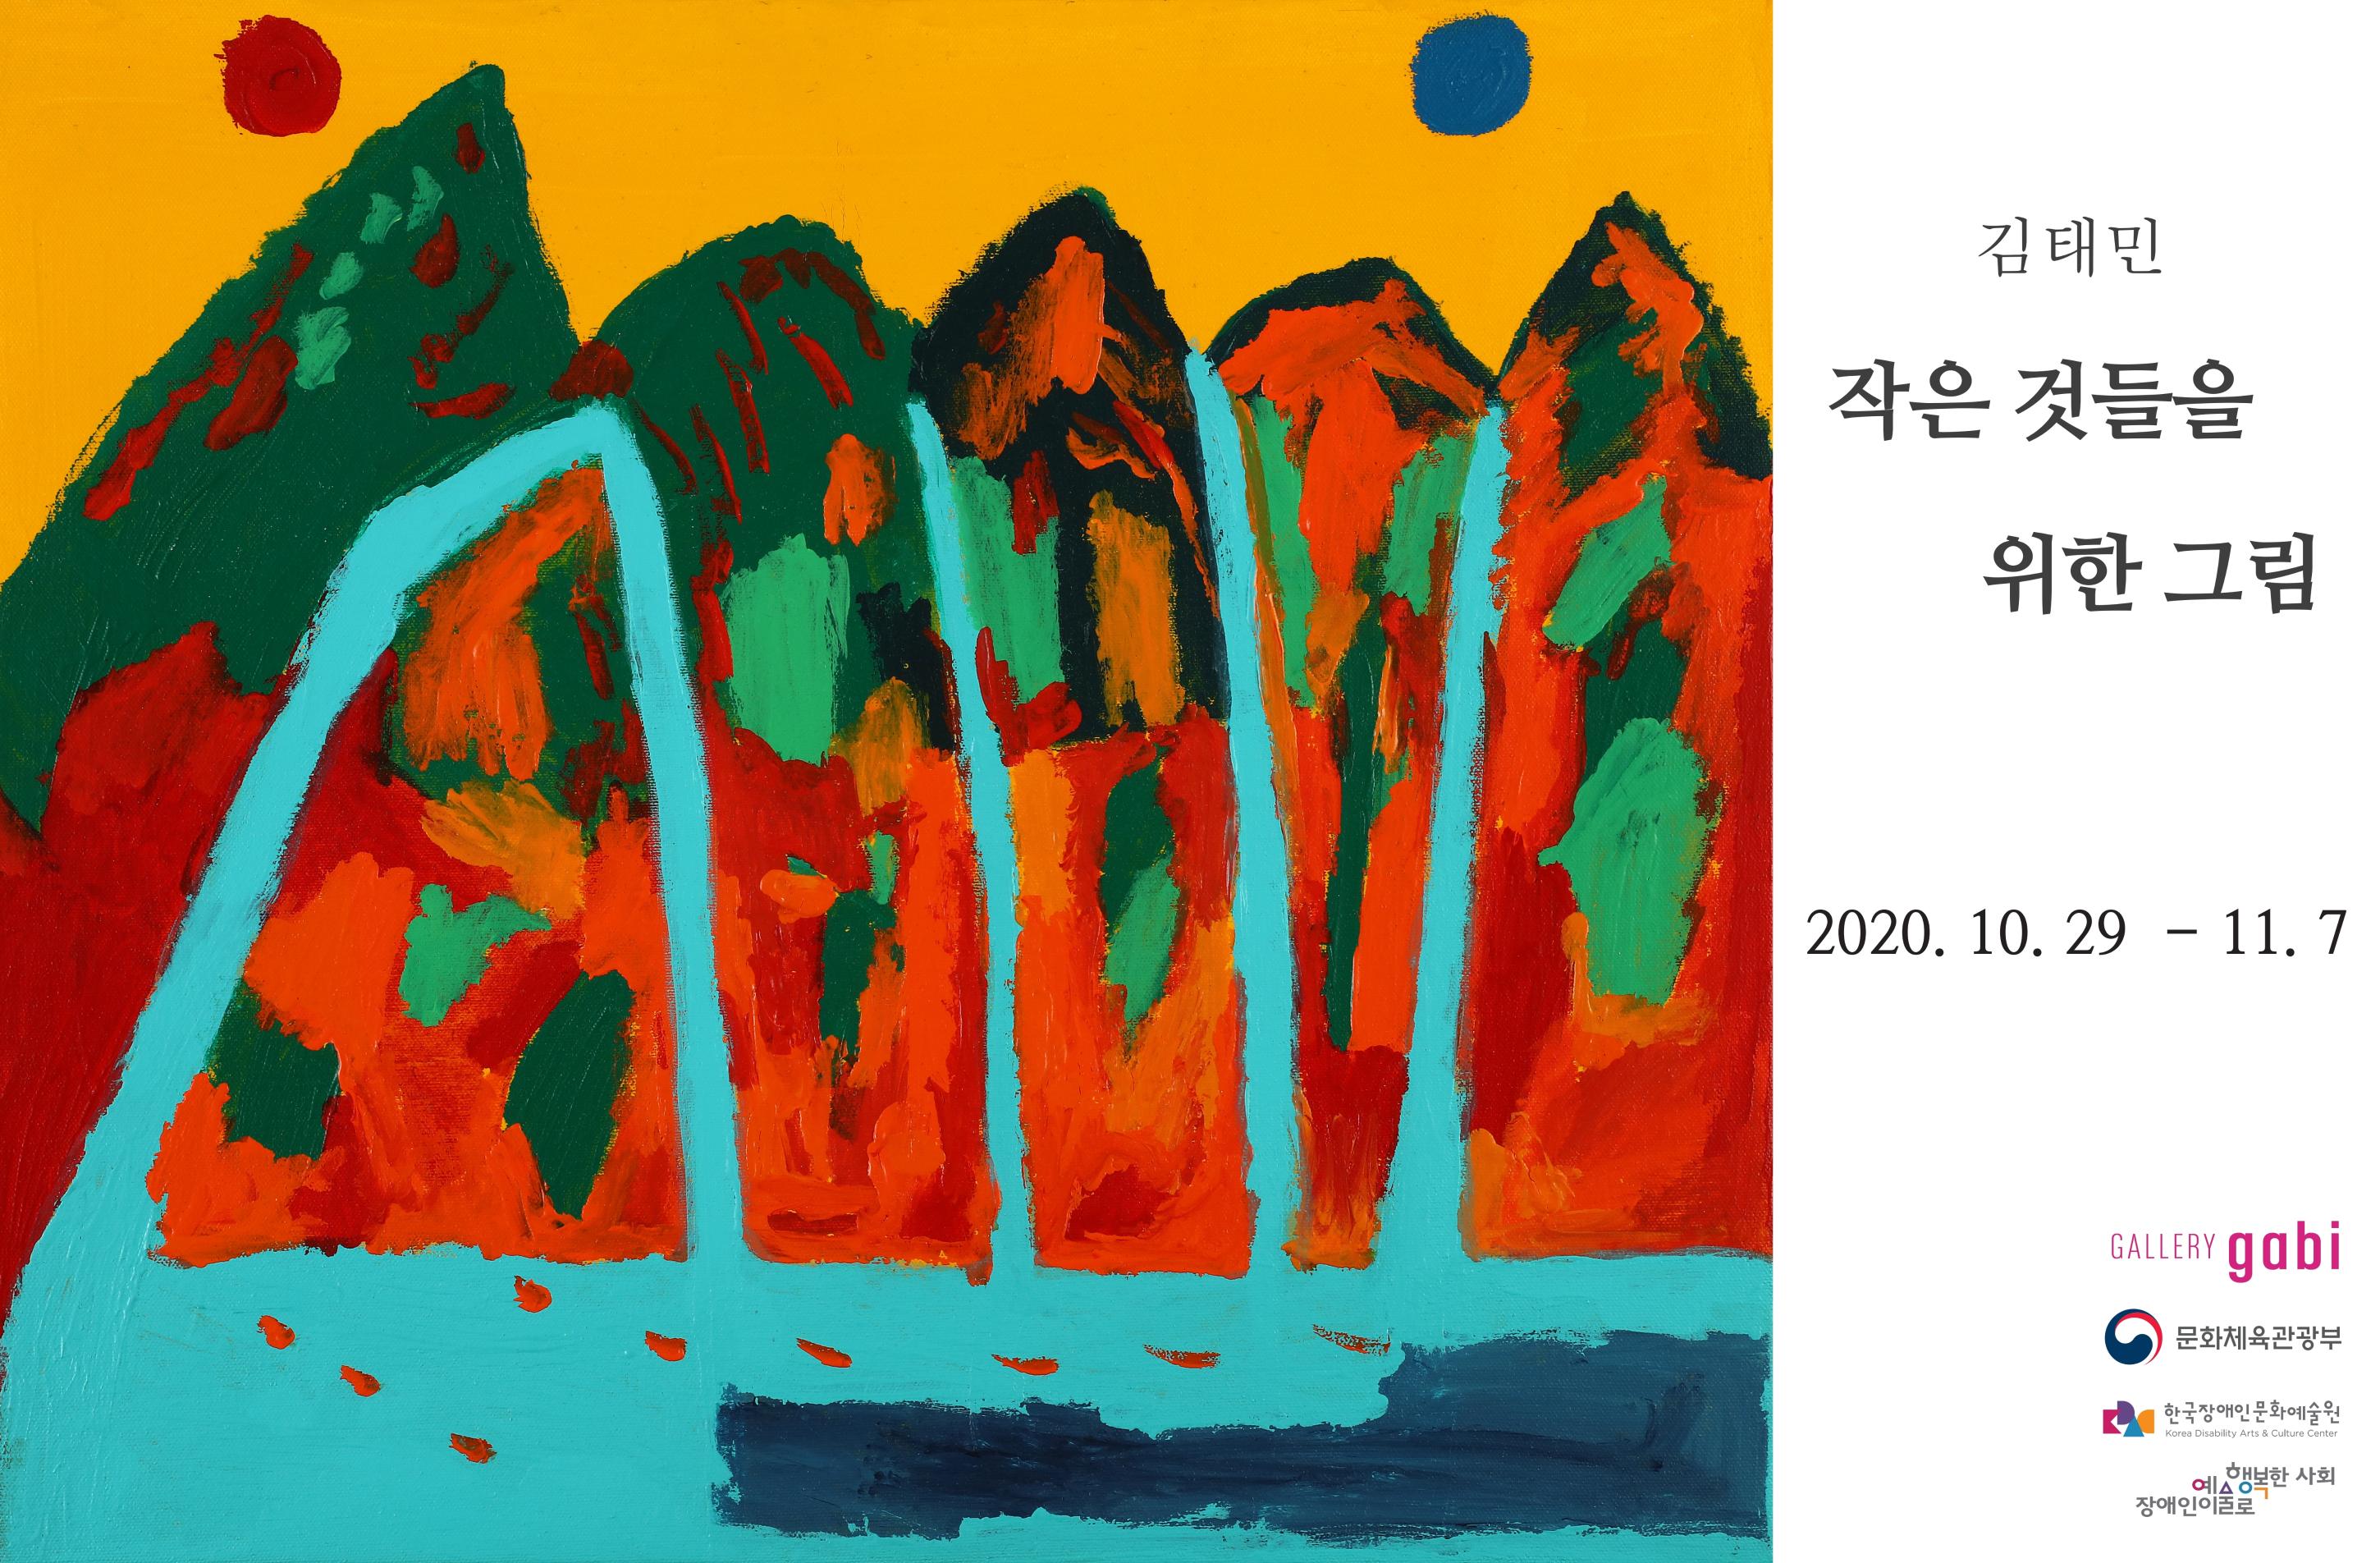 김태민 작은것들을 위한 그림 2020.10.29~11.7 GALLERY gobi, 문화체육관광부, 한국장애인문화예술원